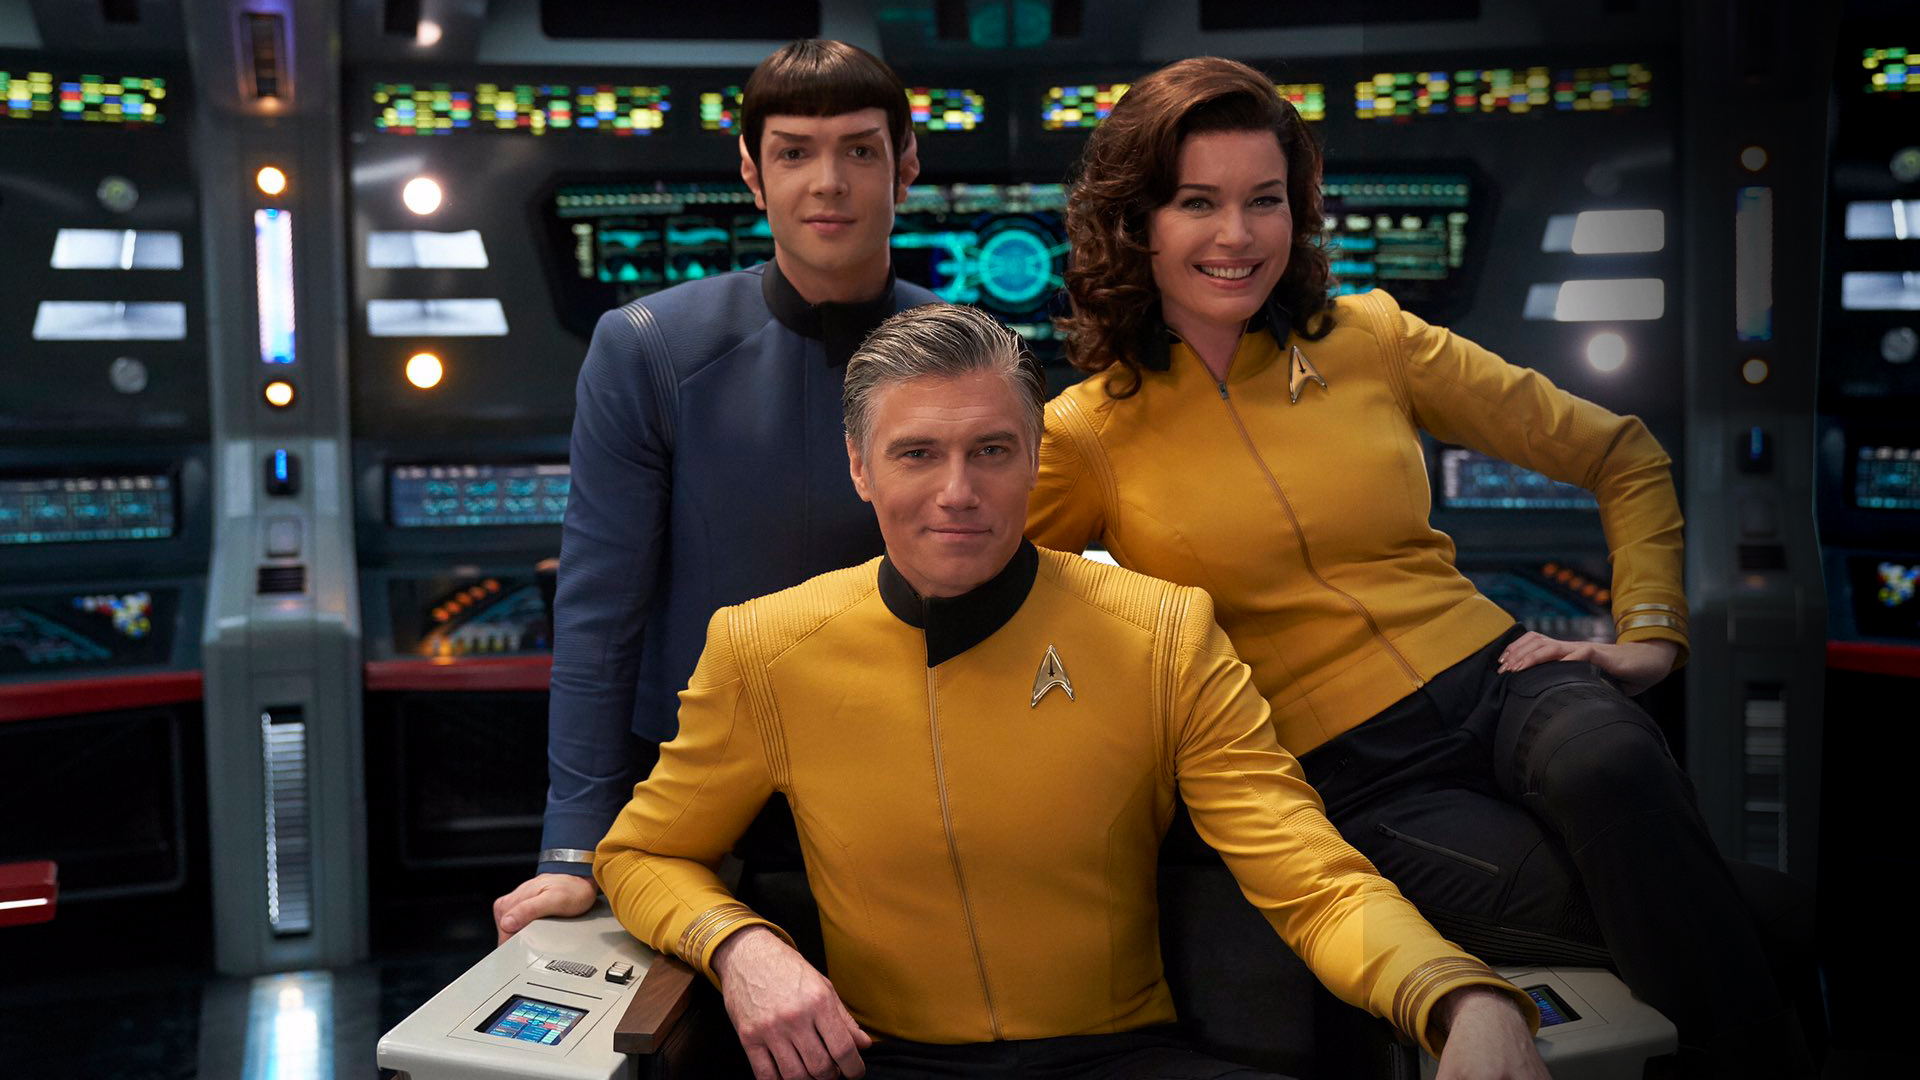 Star Trek Strange New Worlds (TV Series 2020)